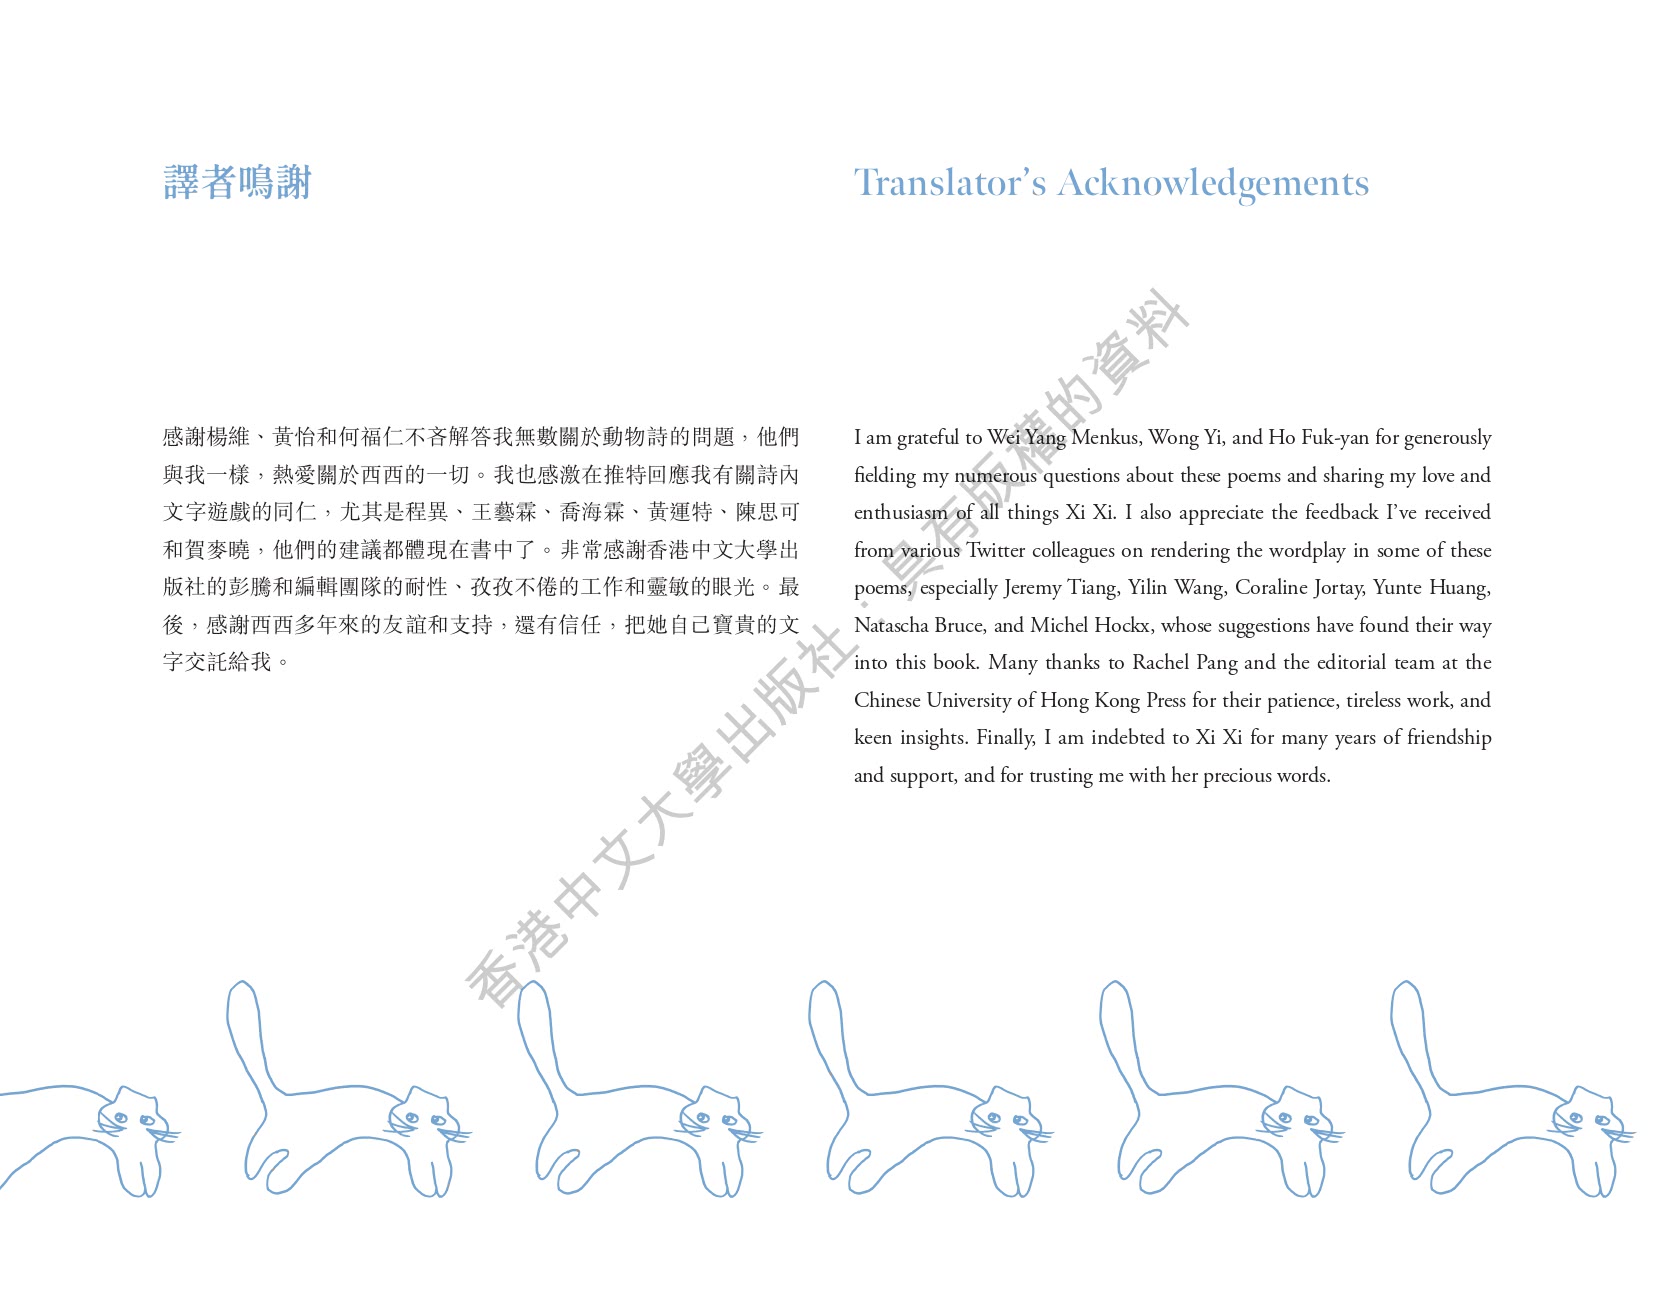 動物嘉年華：西西的動物詩Xi Xi”s Animal Poems（中英雙語版本）